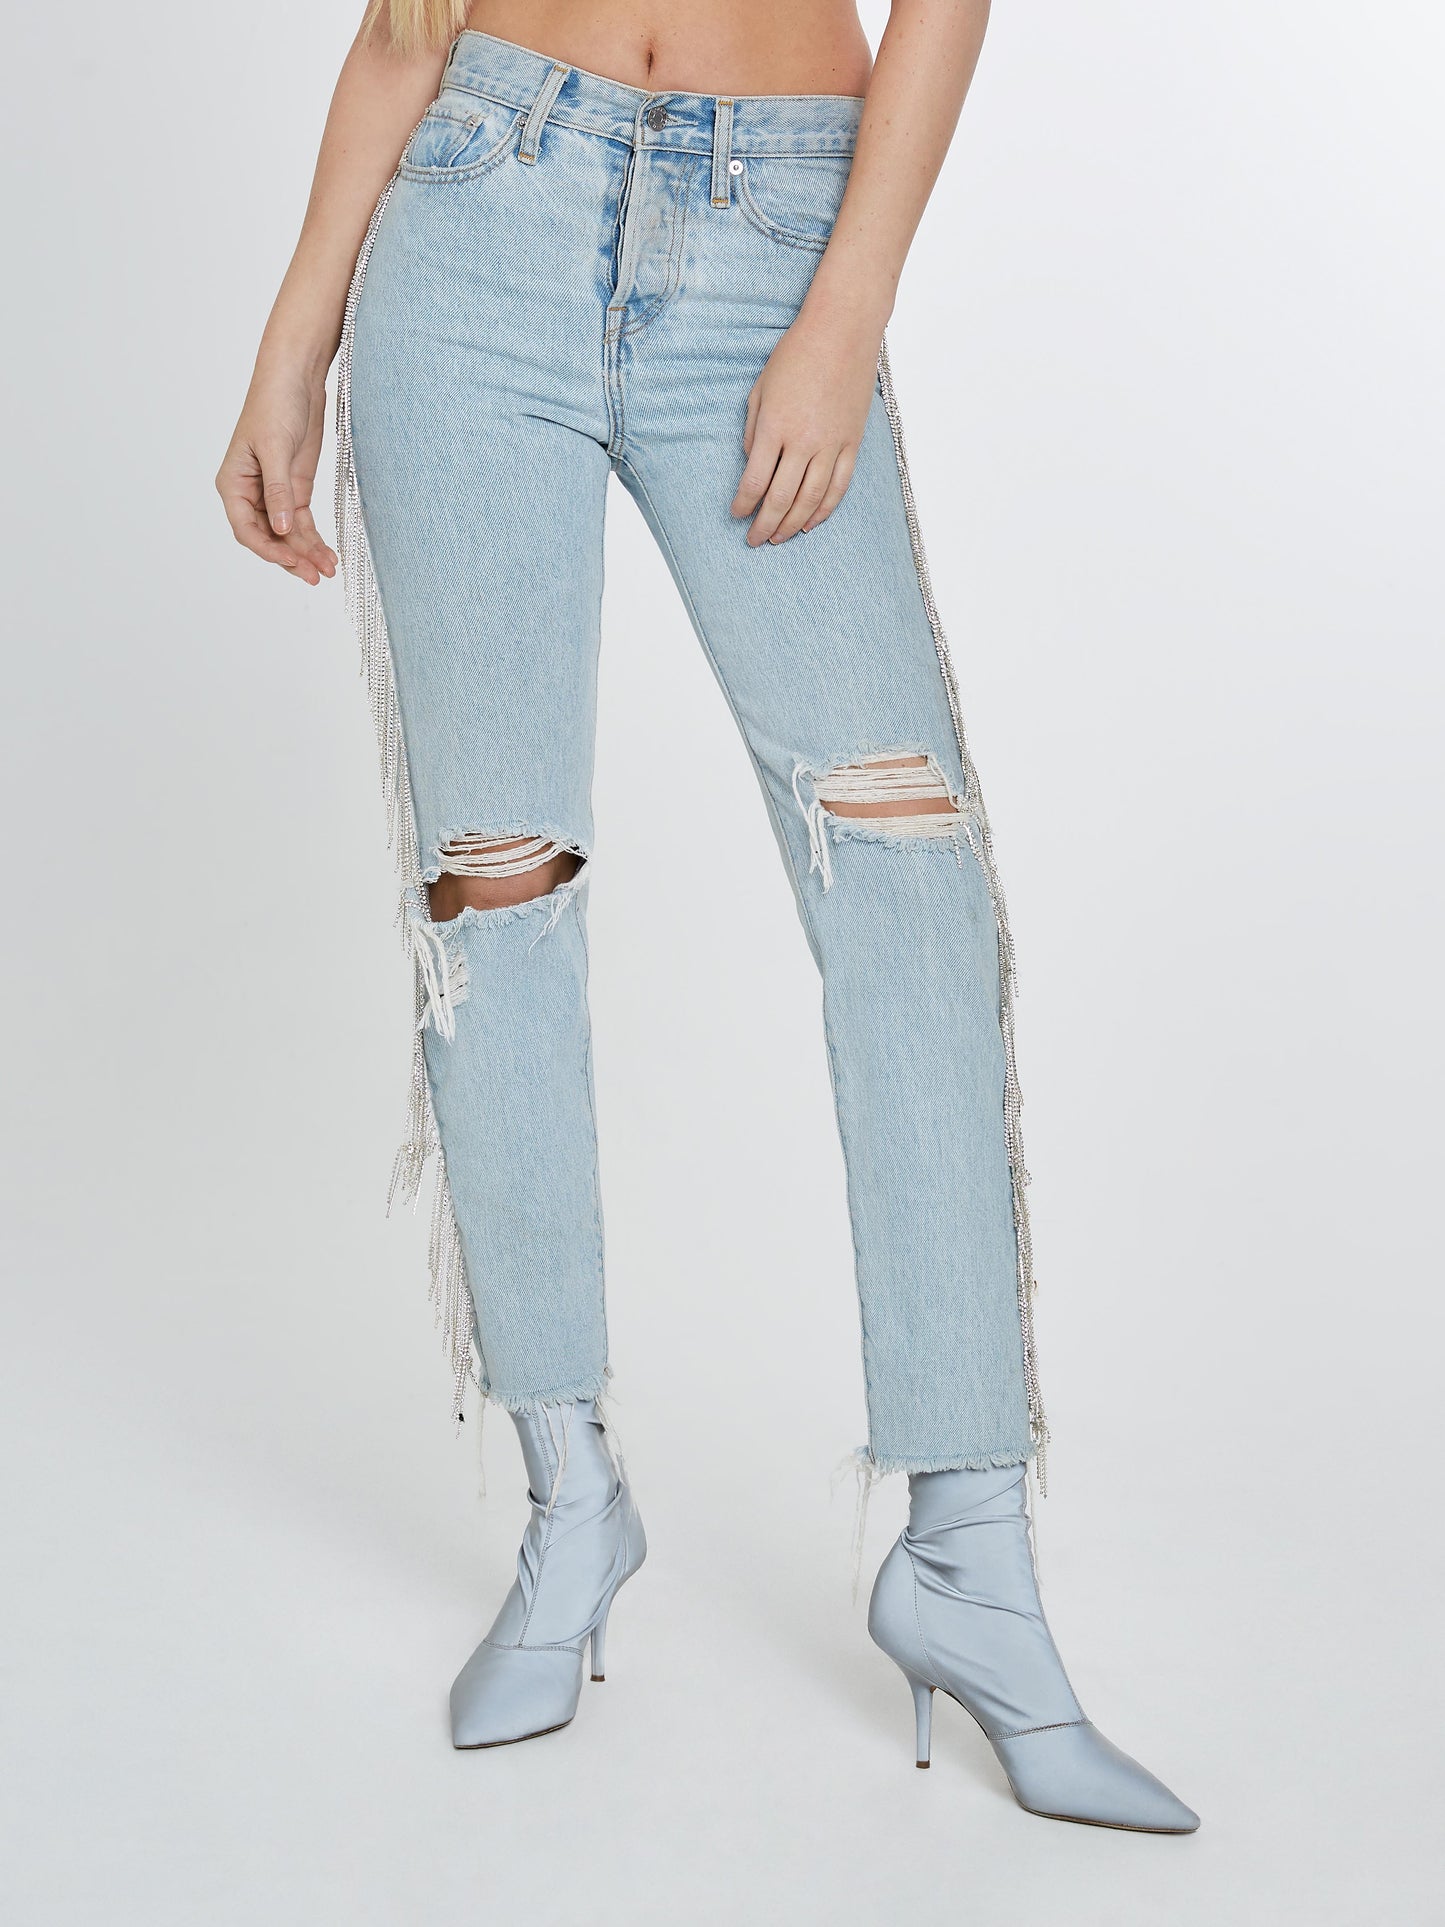 Light denim jeans with crystal fringe